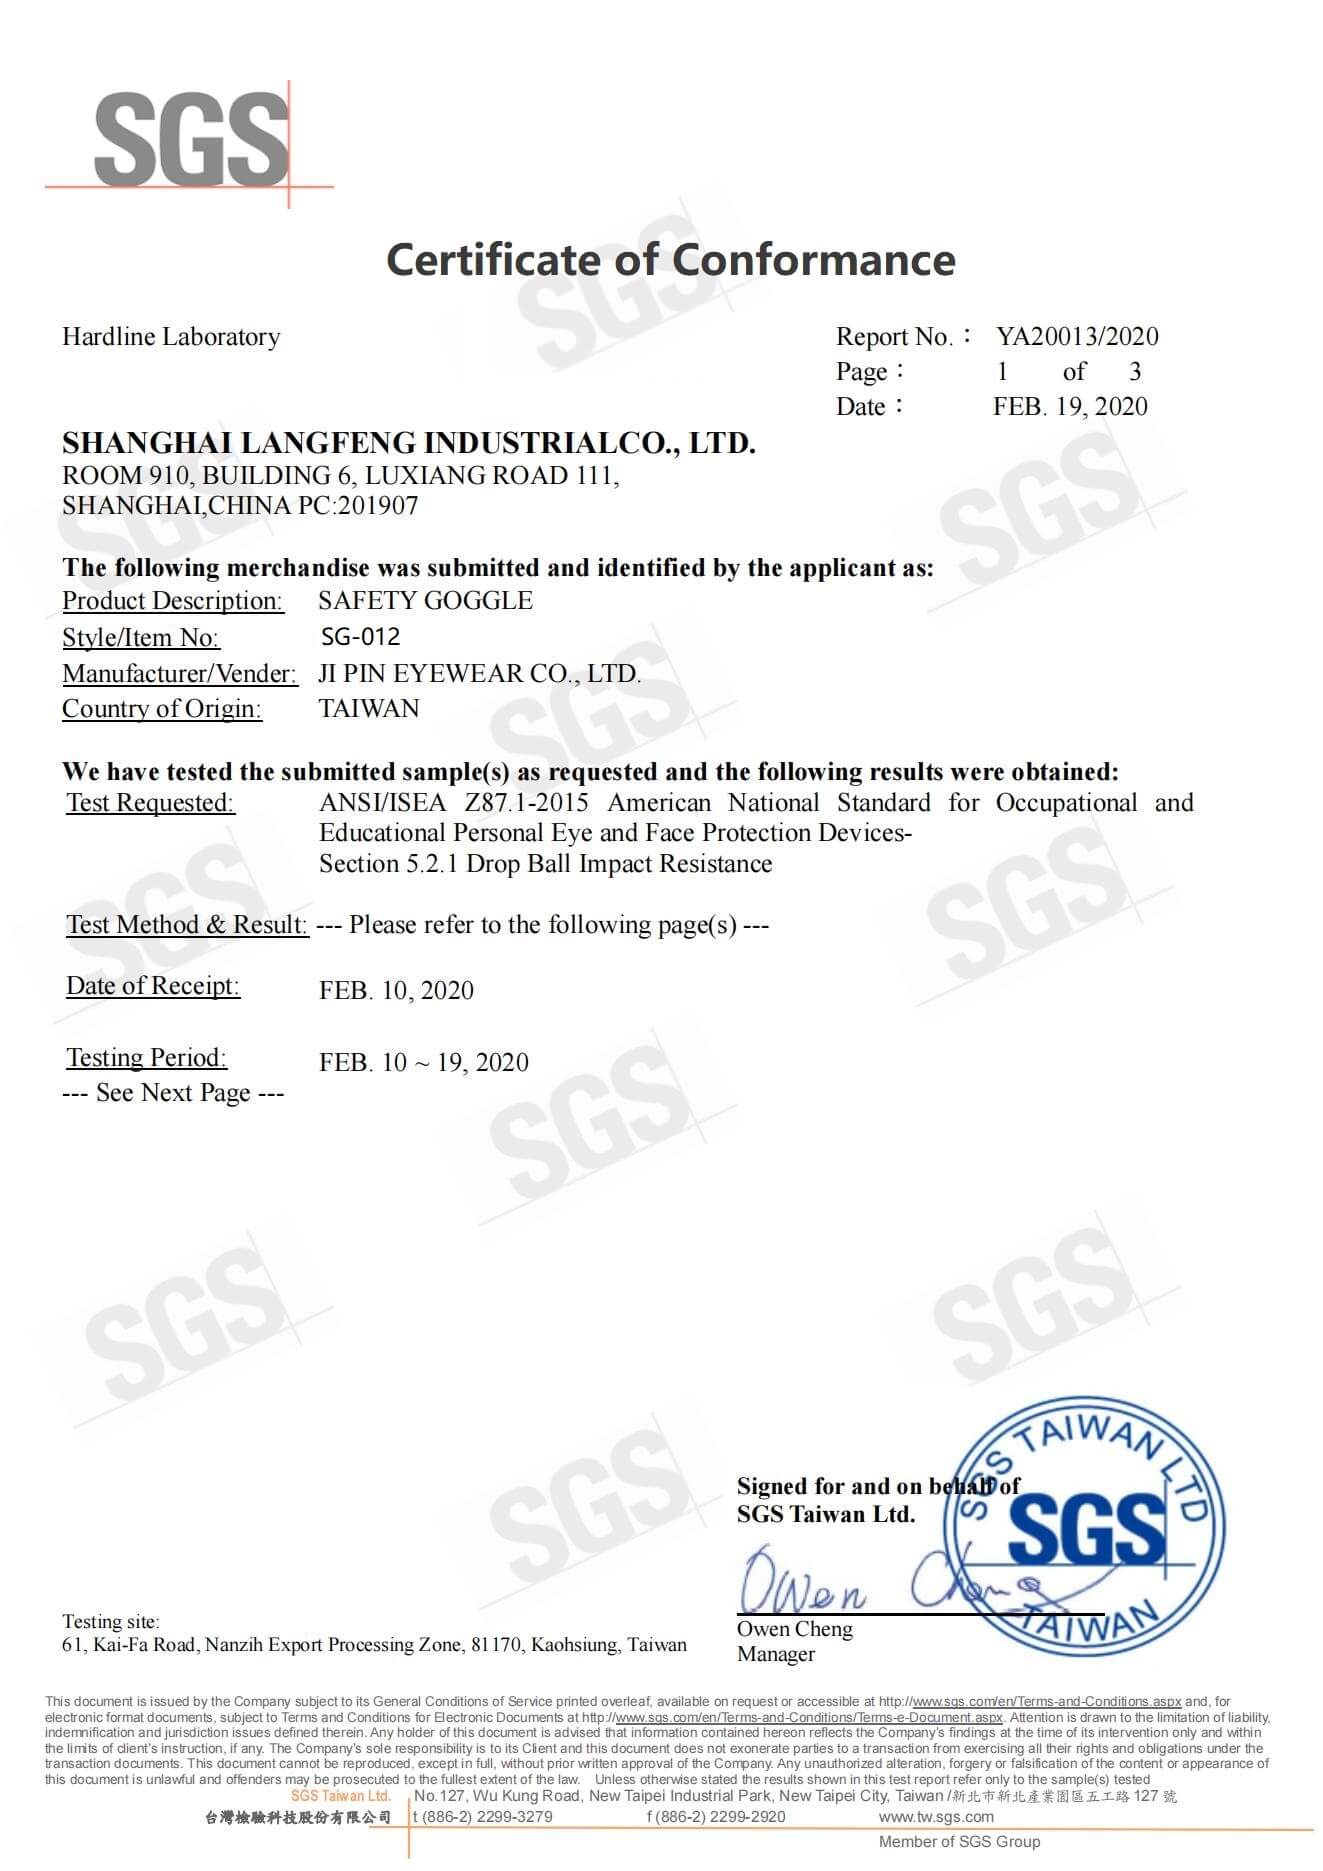 SG012美标ANSI测试证书 正本_00